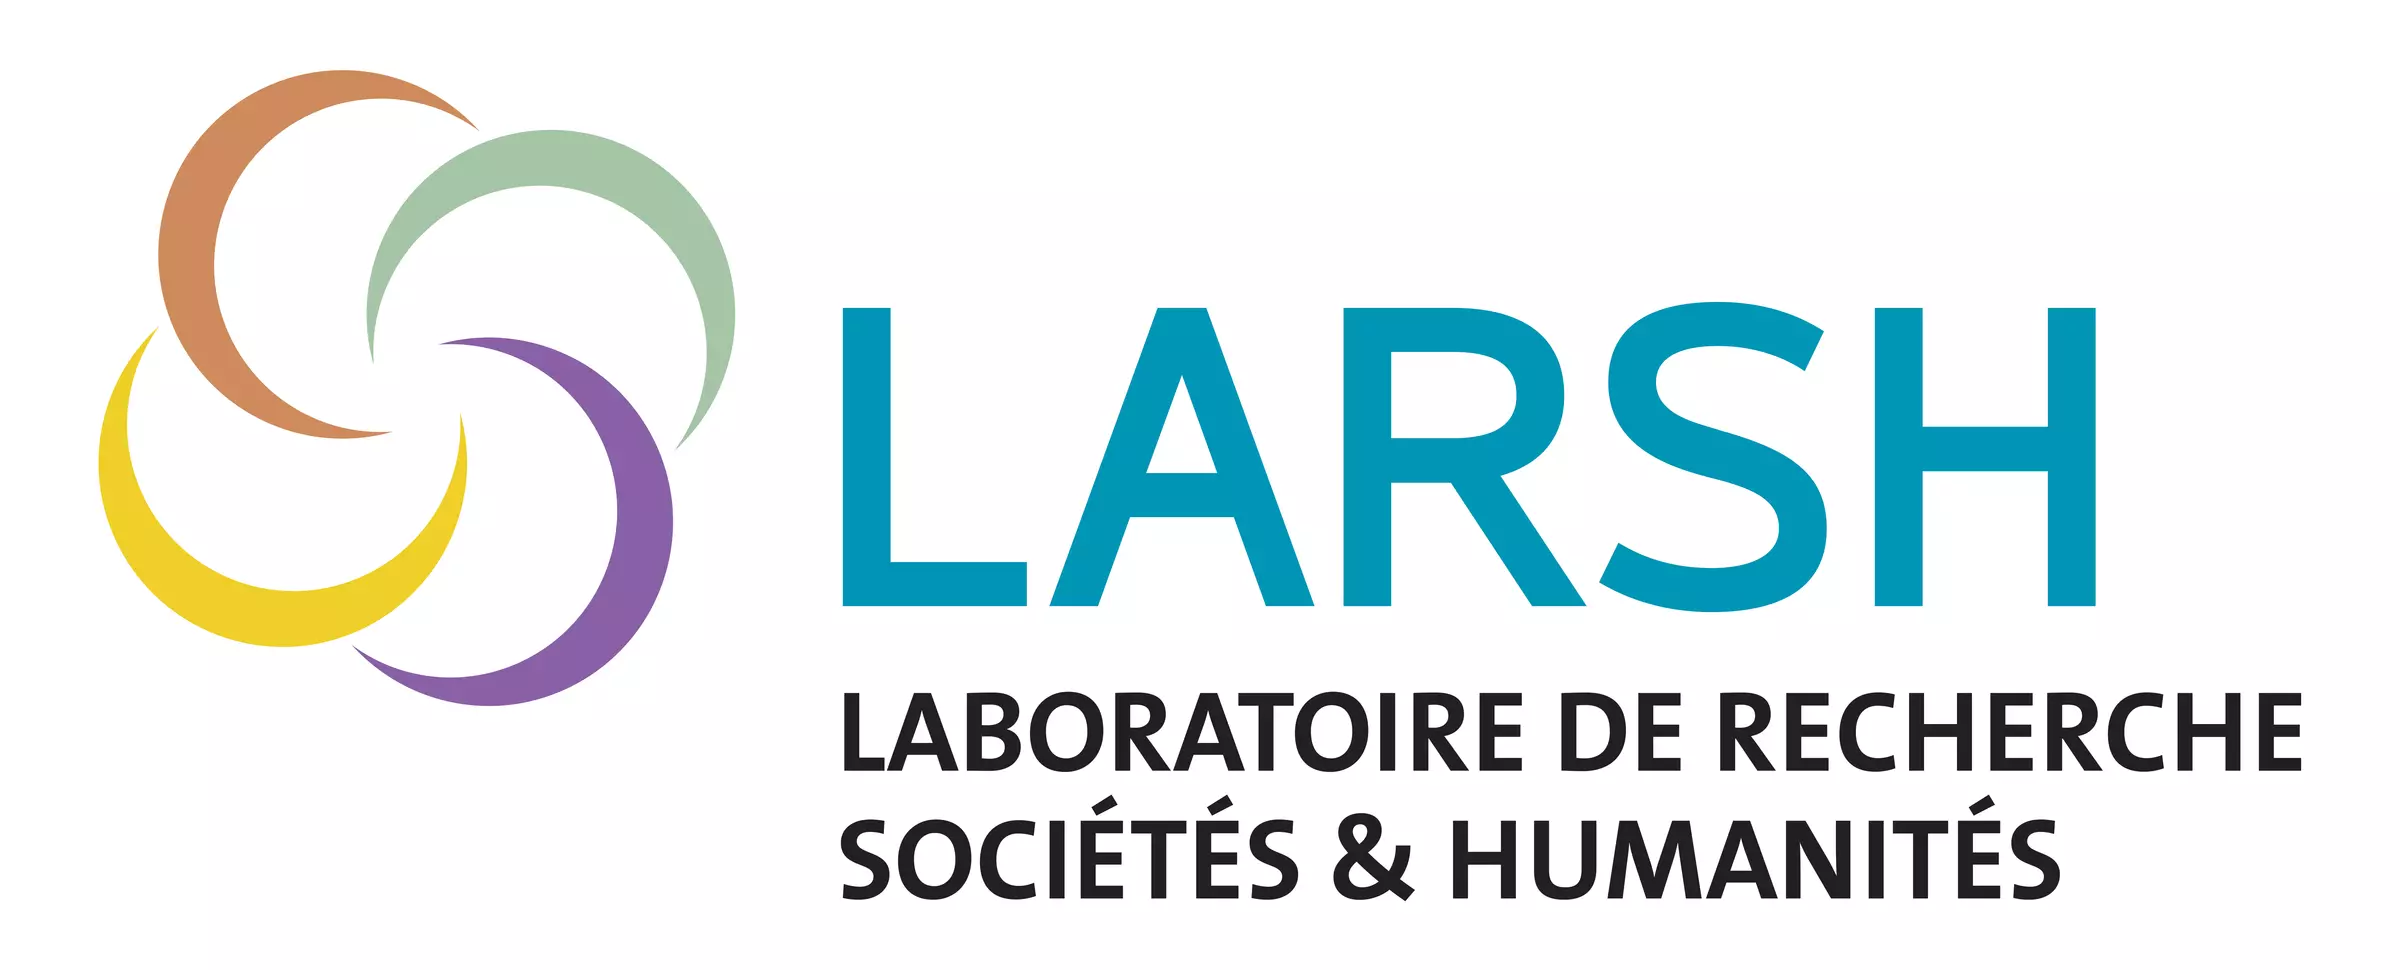 Laboratoire de Recherche Sociétés & Humanités